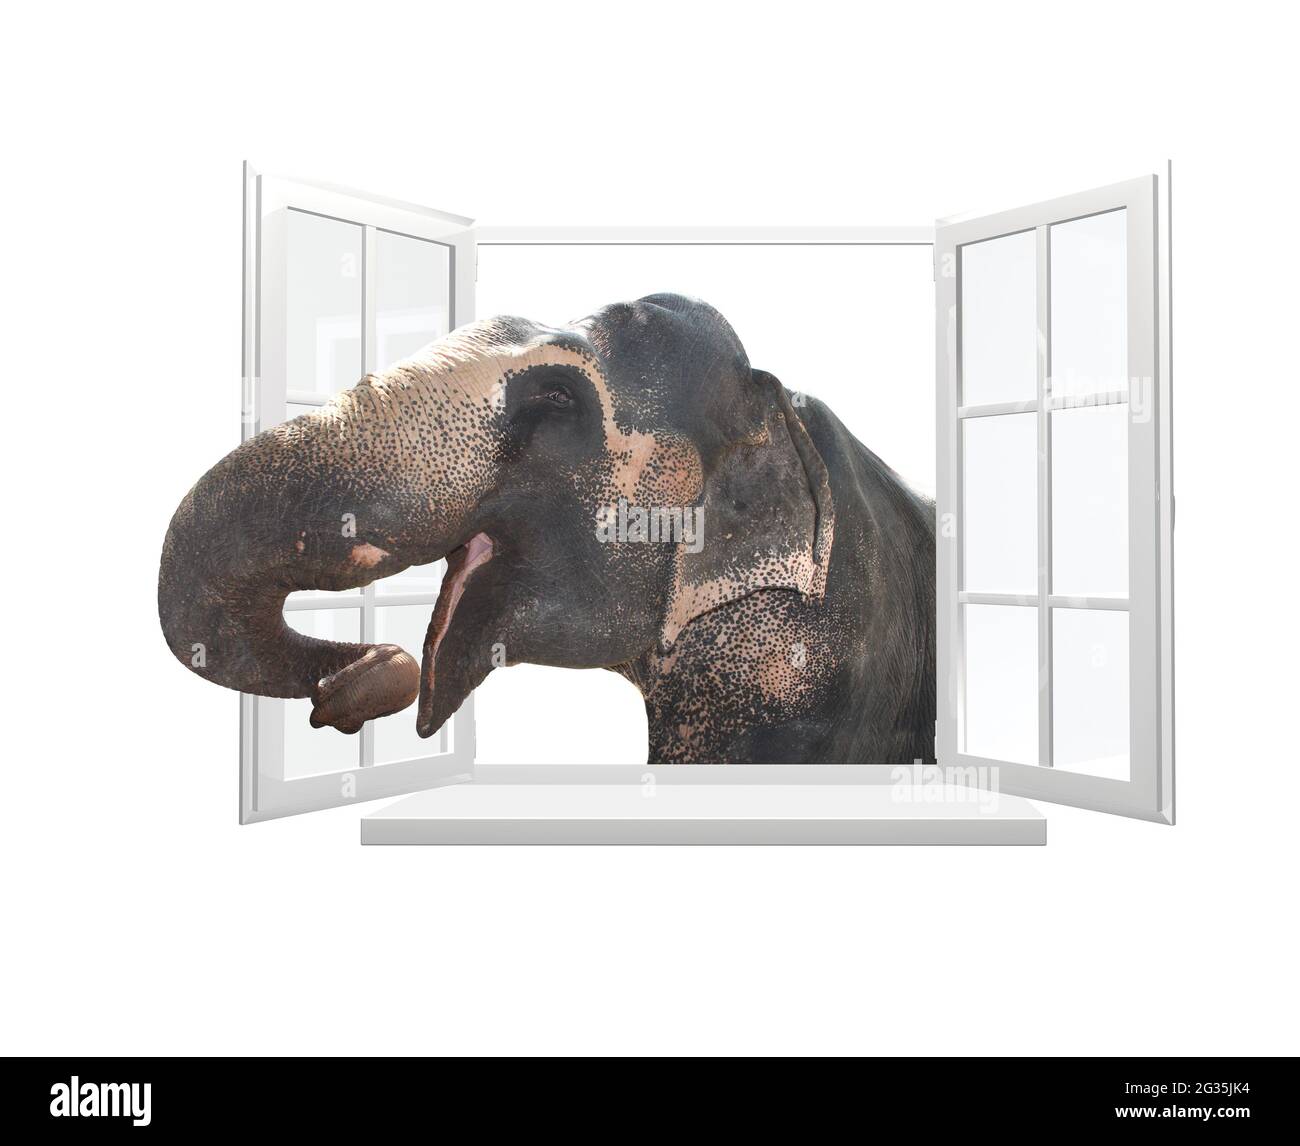 Elefant schaut durch ein Fenster. Niedlicher neugieriger Elefant starrst an das geöffnete Fenster. Isoliert auf weißem Hintergrund. 3d-Rendering Stockfoto